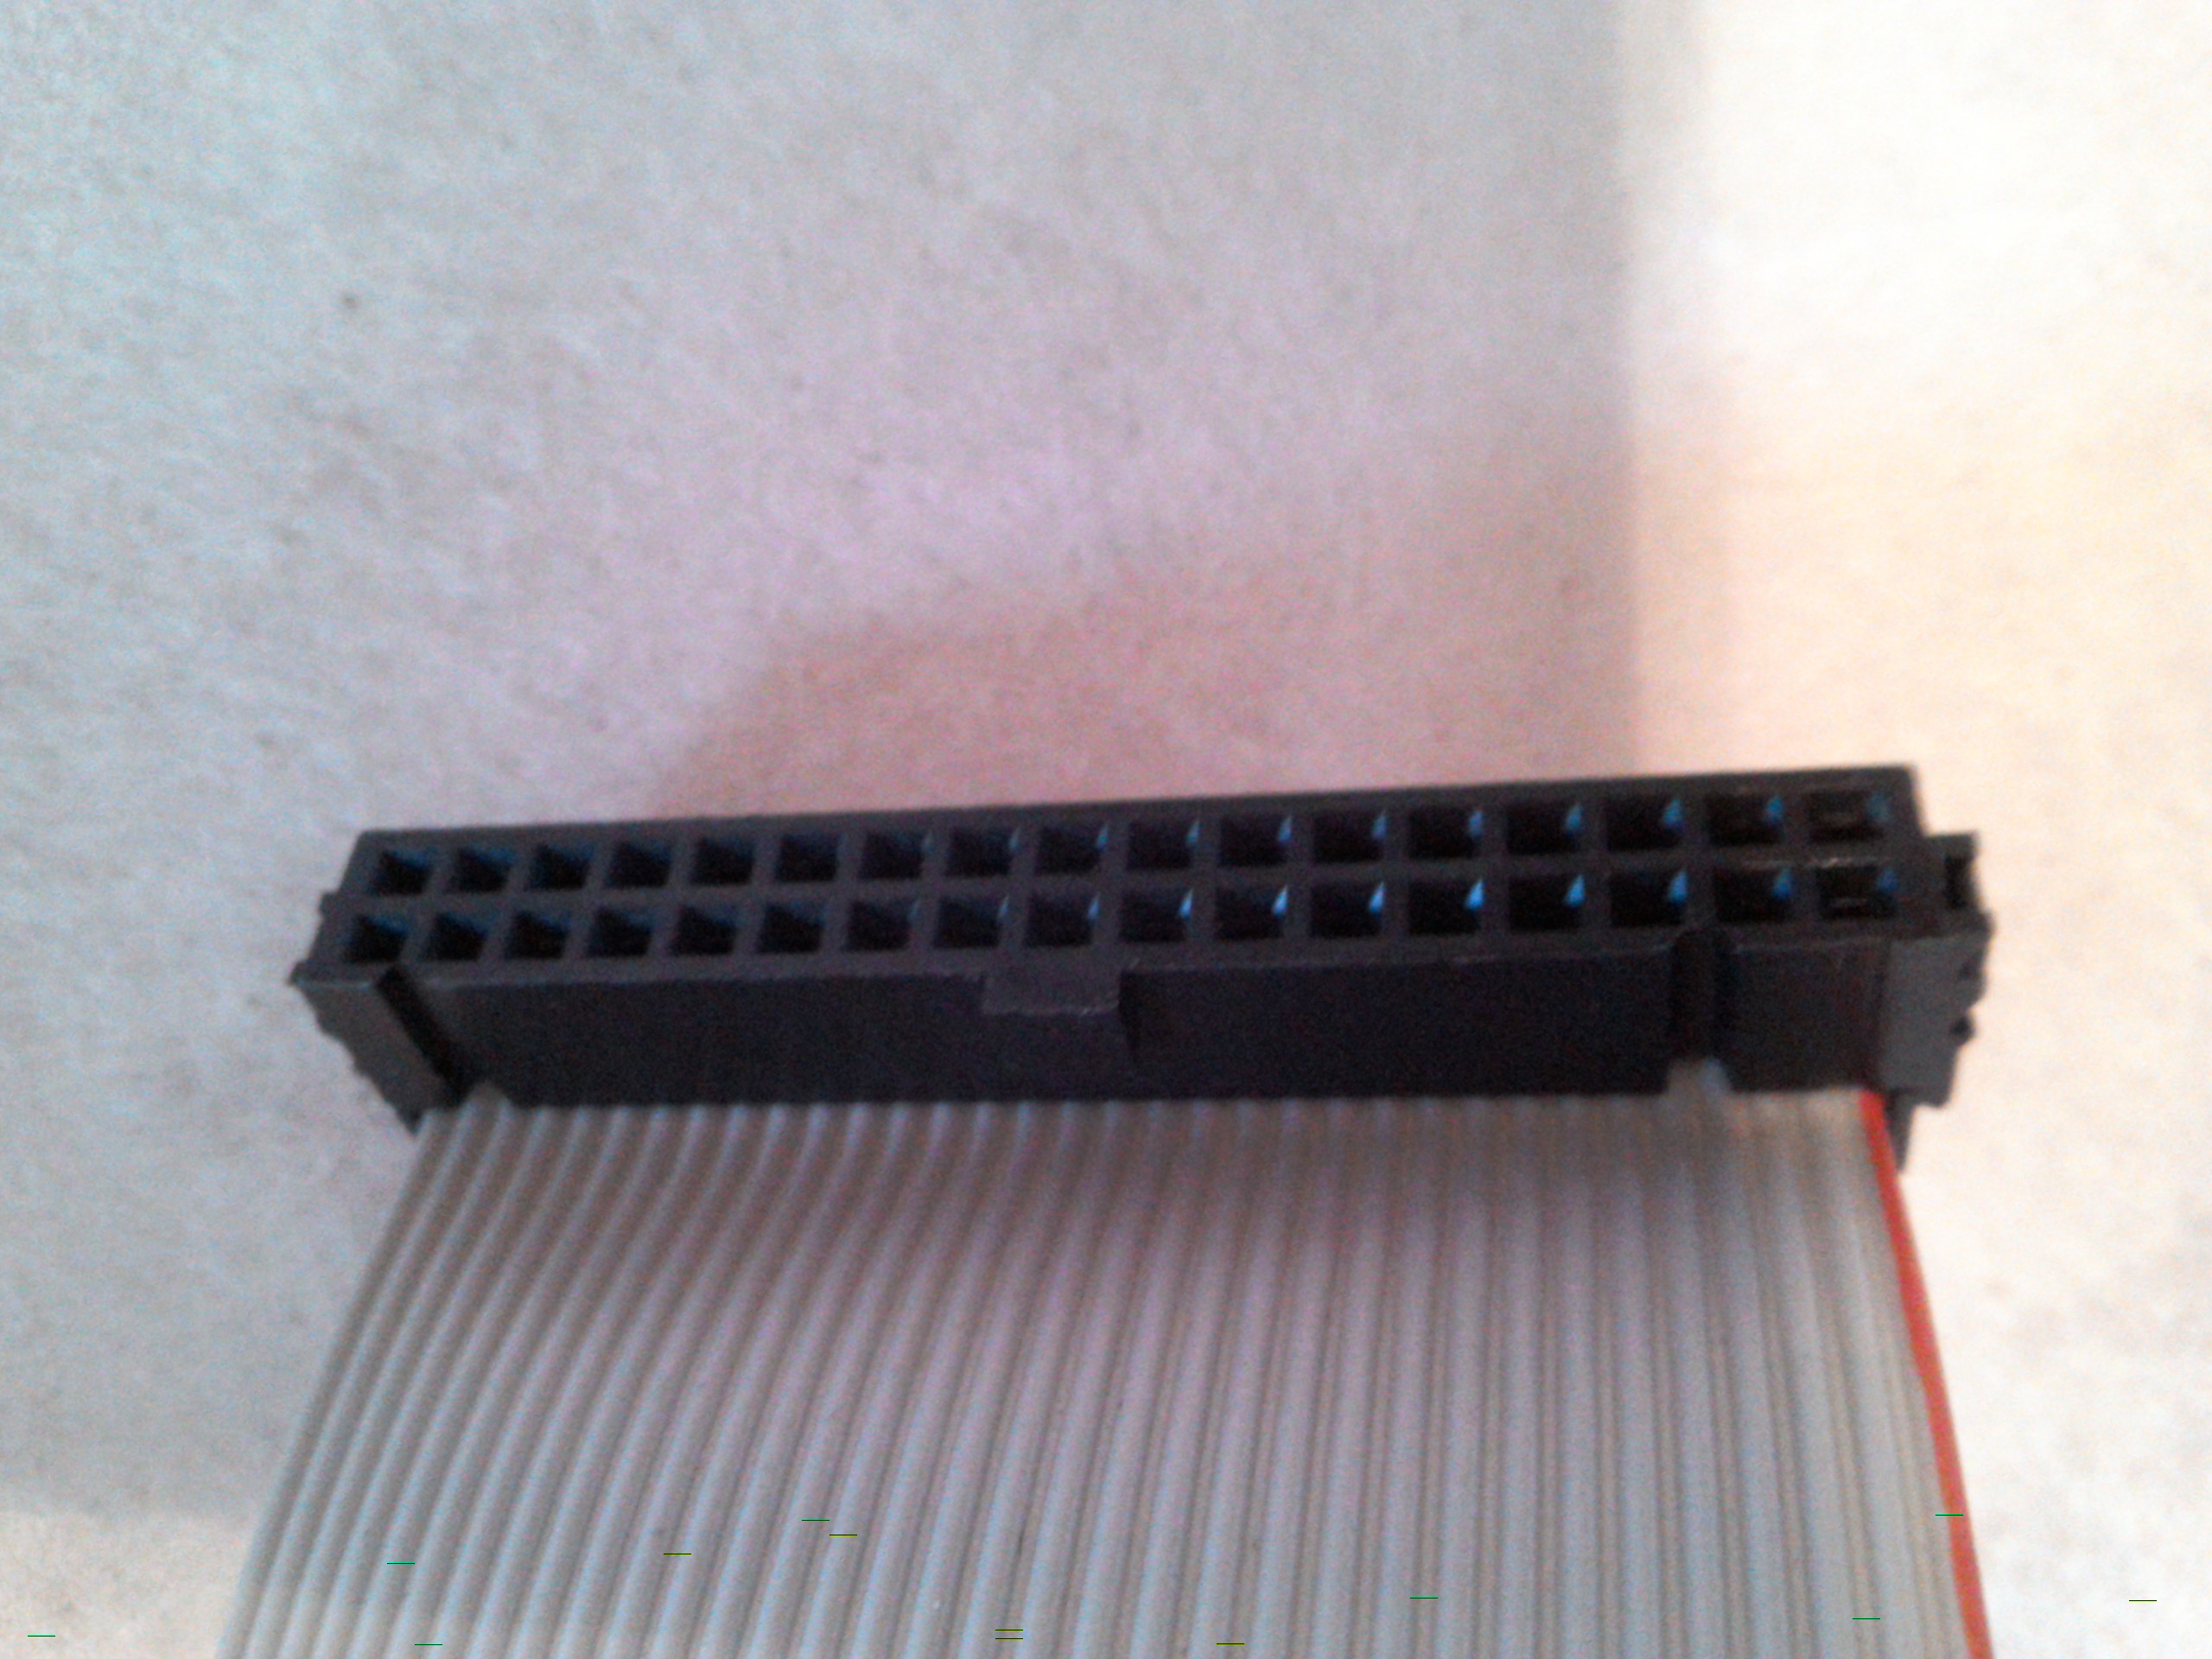 Flachbandkabel 2G-KY105A-01 REV.A03 mit 1 x 36-Pol.Stecker und 1 x 34-Pol.Stecker und 1 x 2-Pol.Stecker